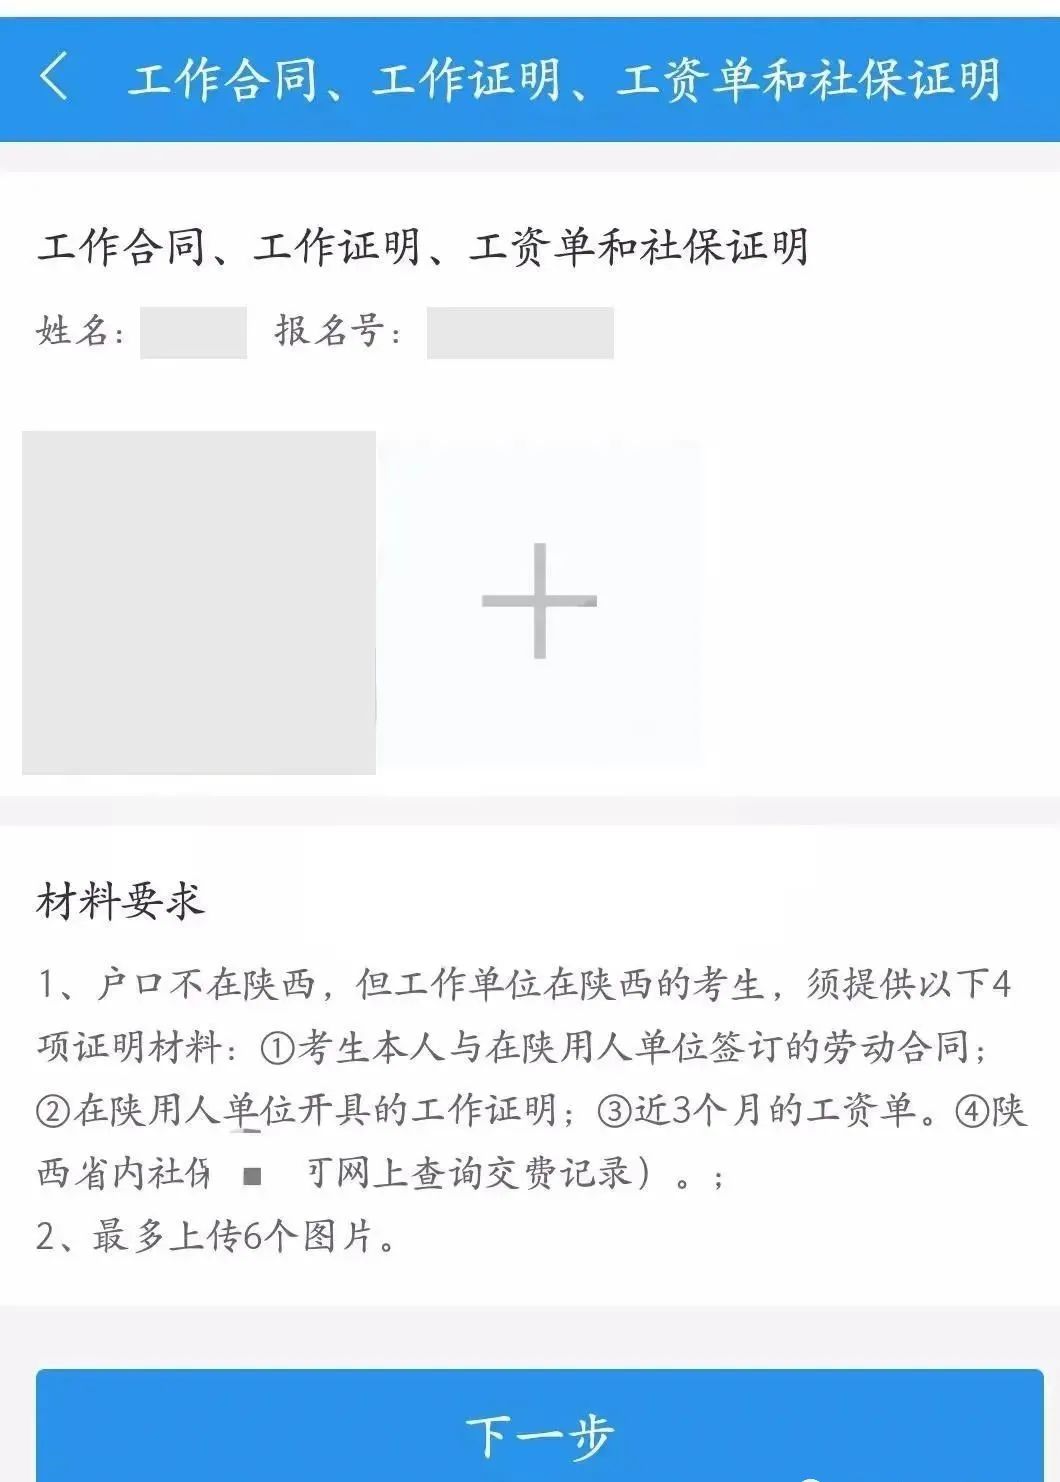 上海23考研网上确认详细攻略一览